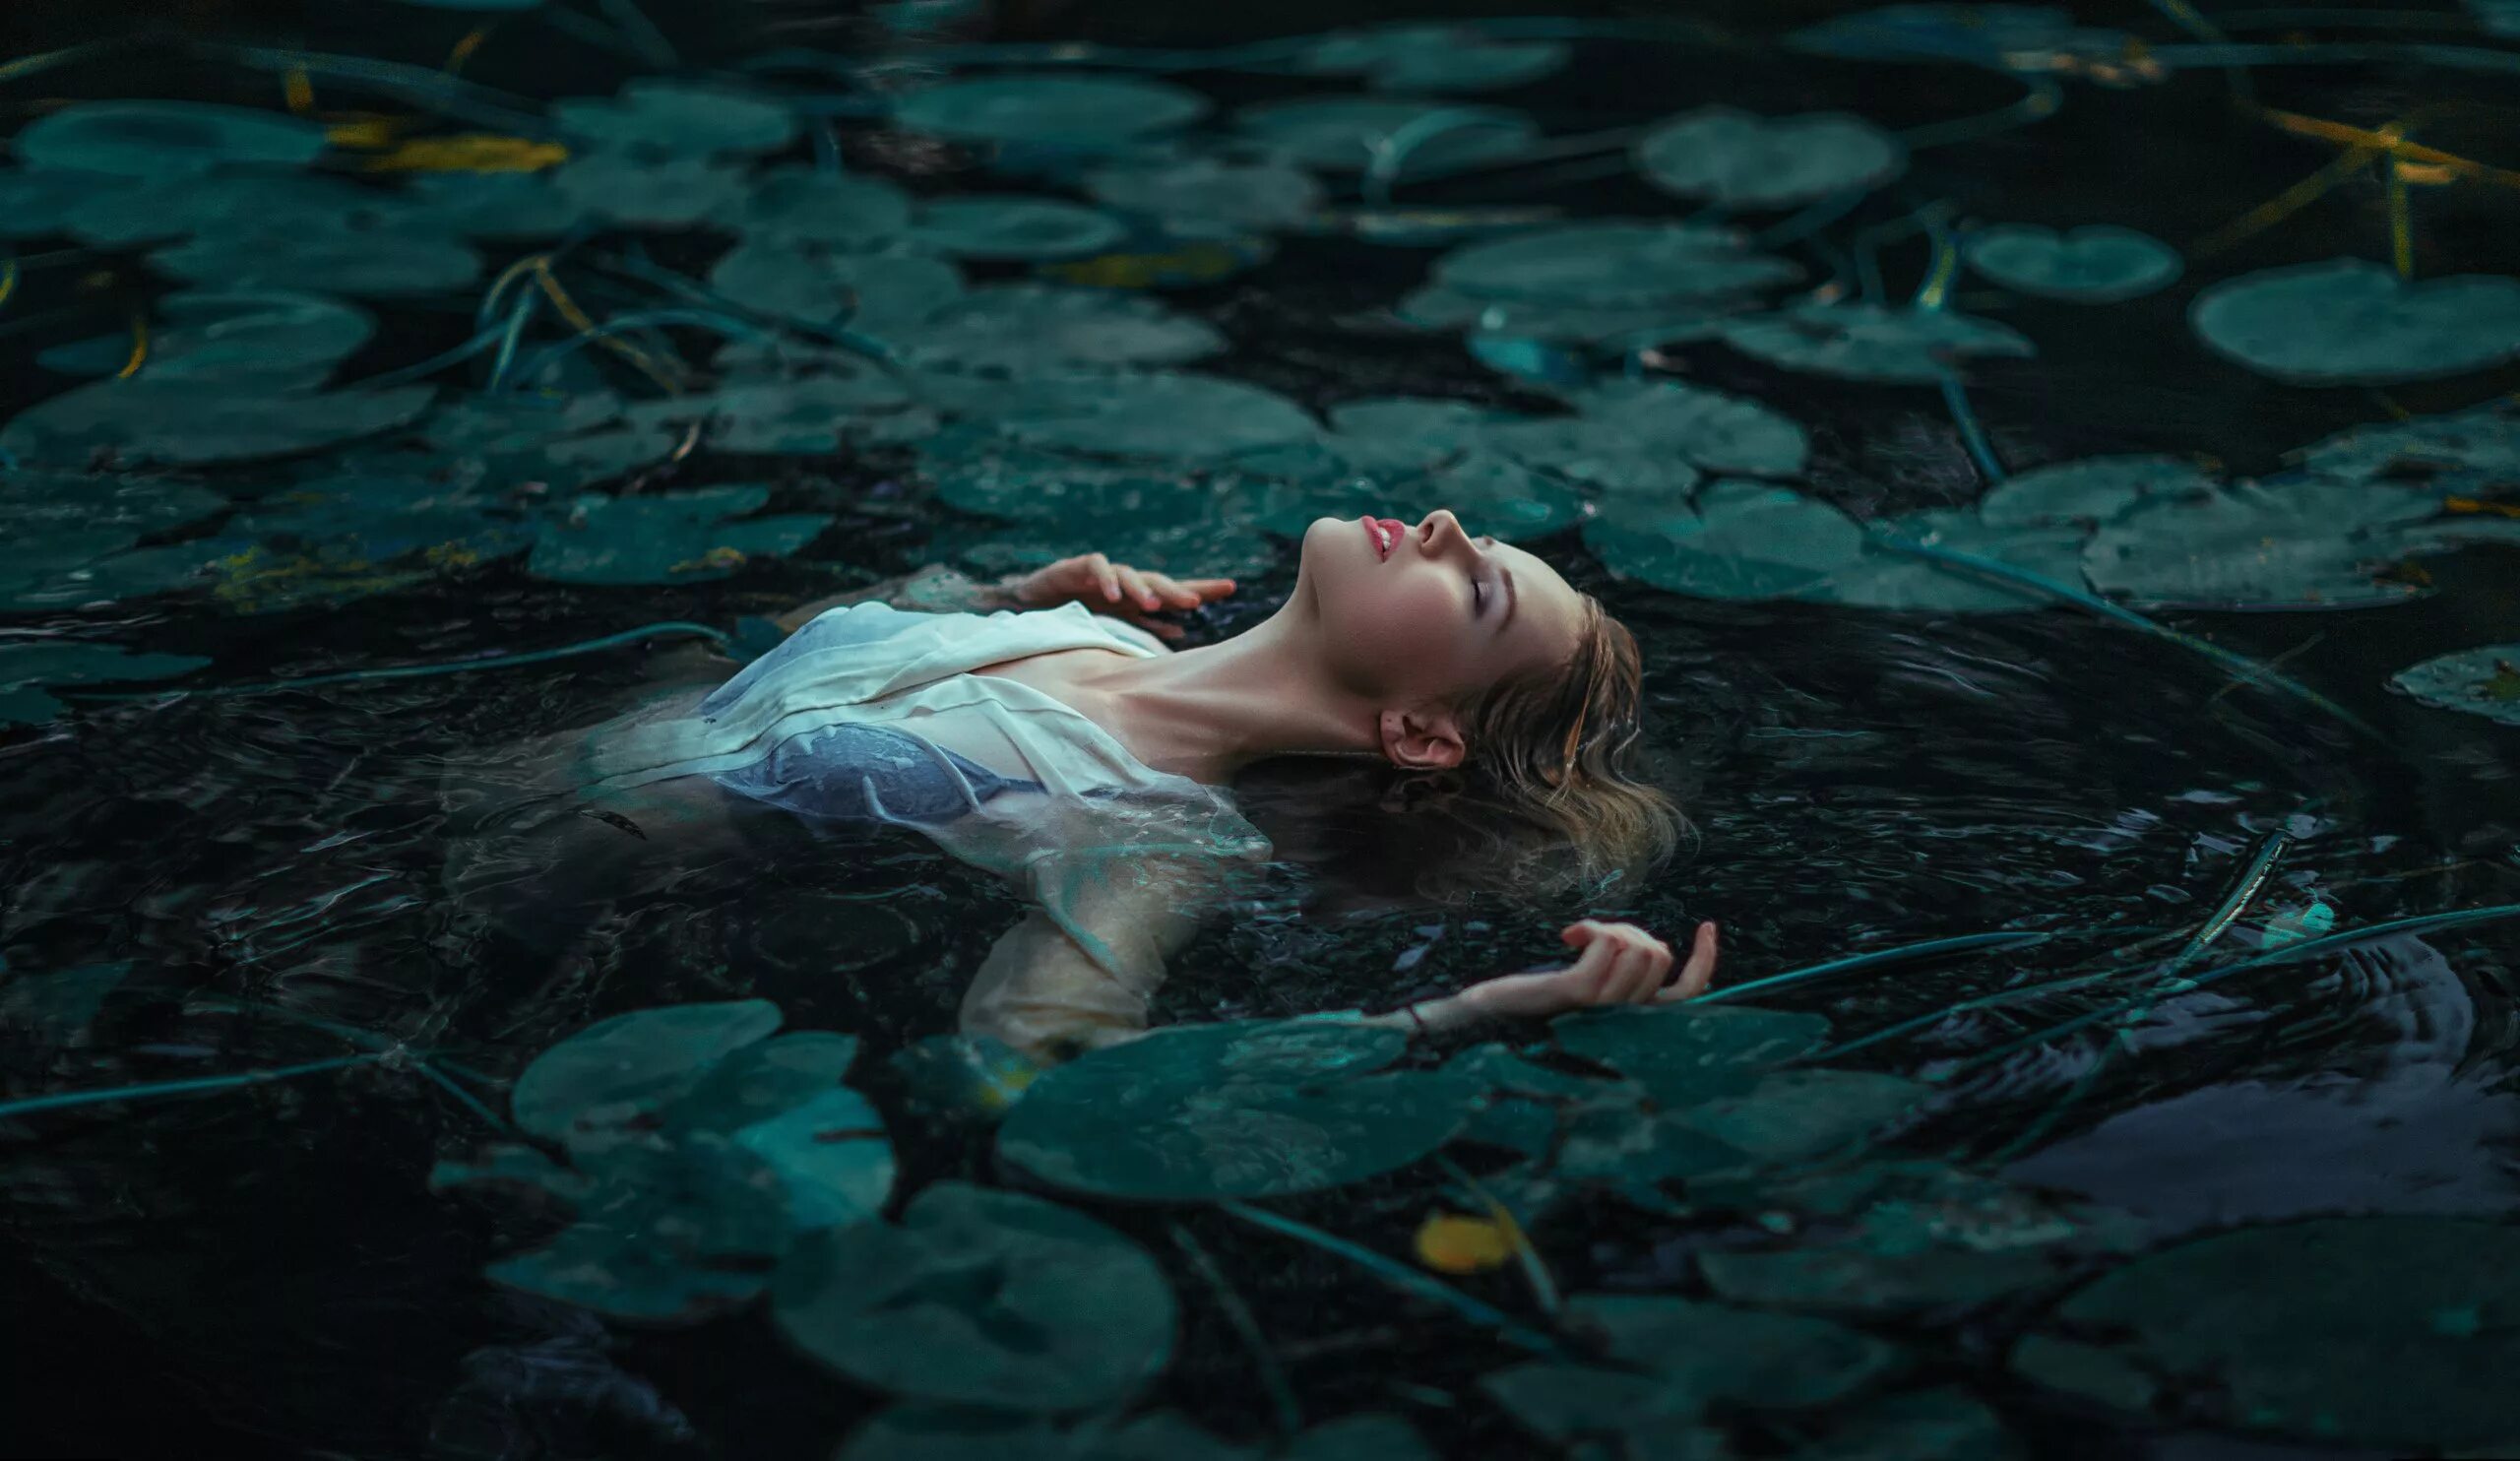 Русалка Утопленница. Девушка в воде. Фотосессия в воде. Девушка лежит в воде. Наличие света в воде